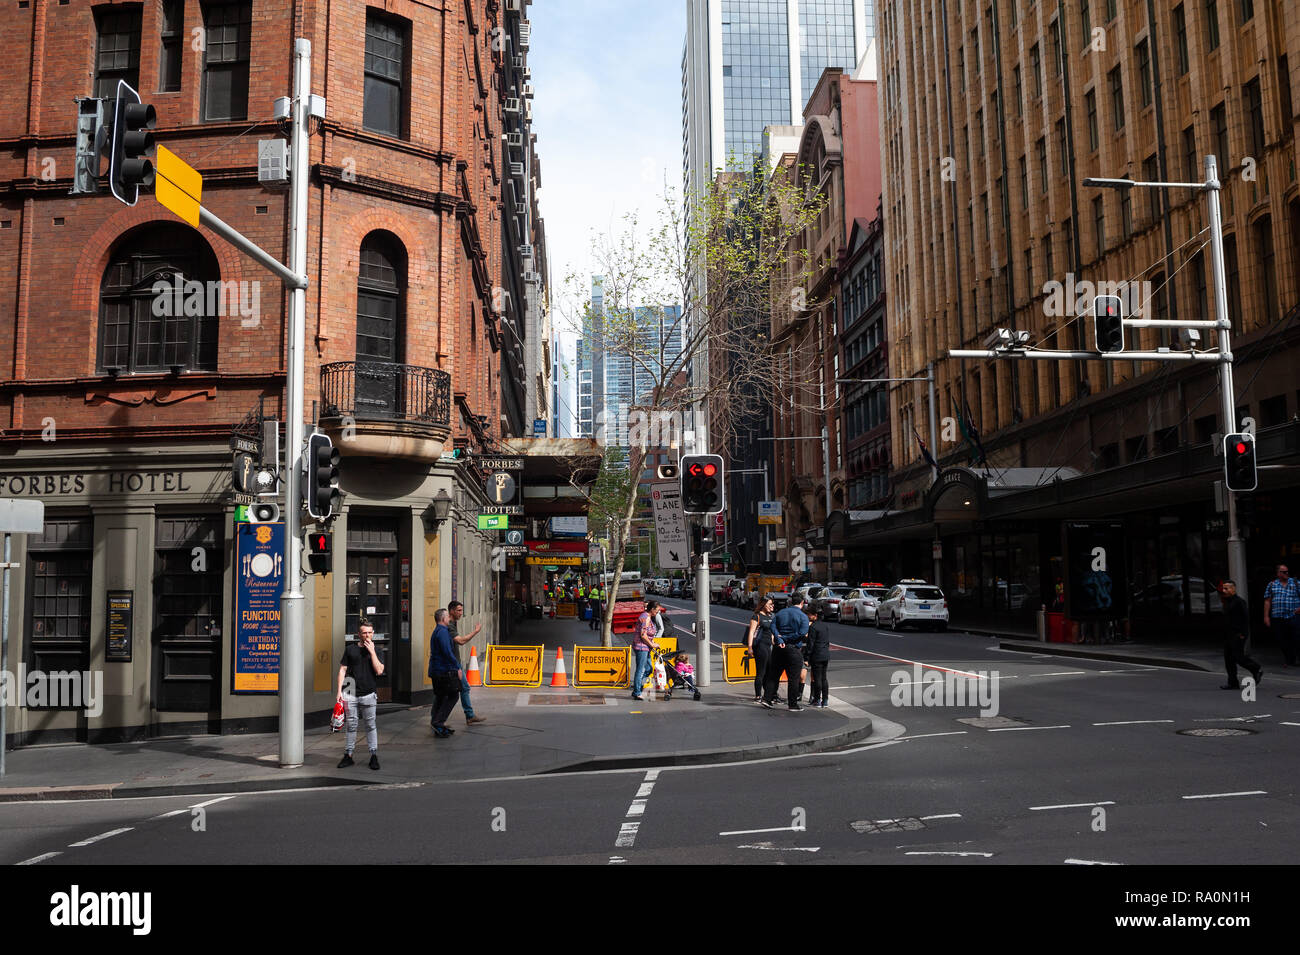 22.09.2018, Sydney, New South Wales, Australien - Menschen warten im Geschaeftsviertel von Sydney an einer Fussgaengerampel. 0SL180922D001CARO.JPG [MO Stock Photo